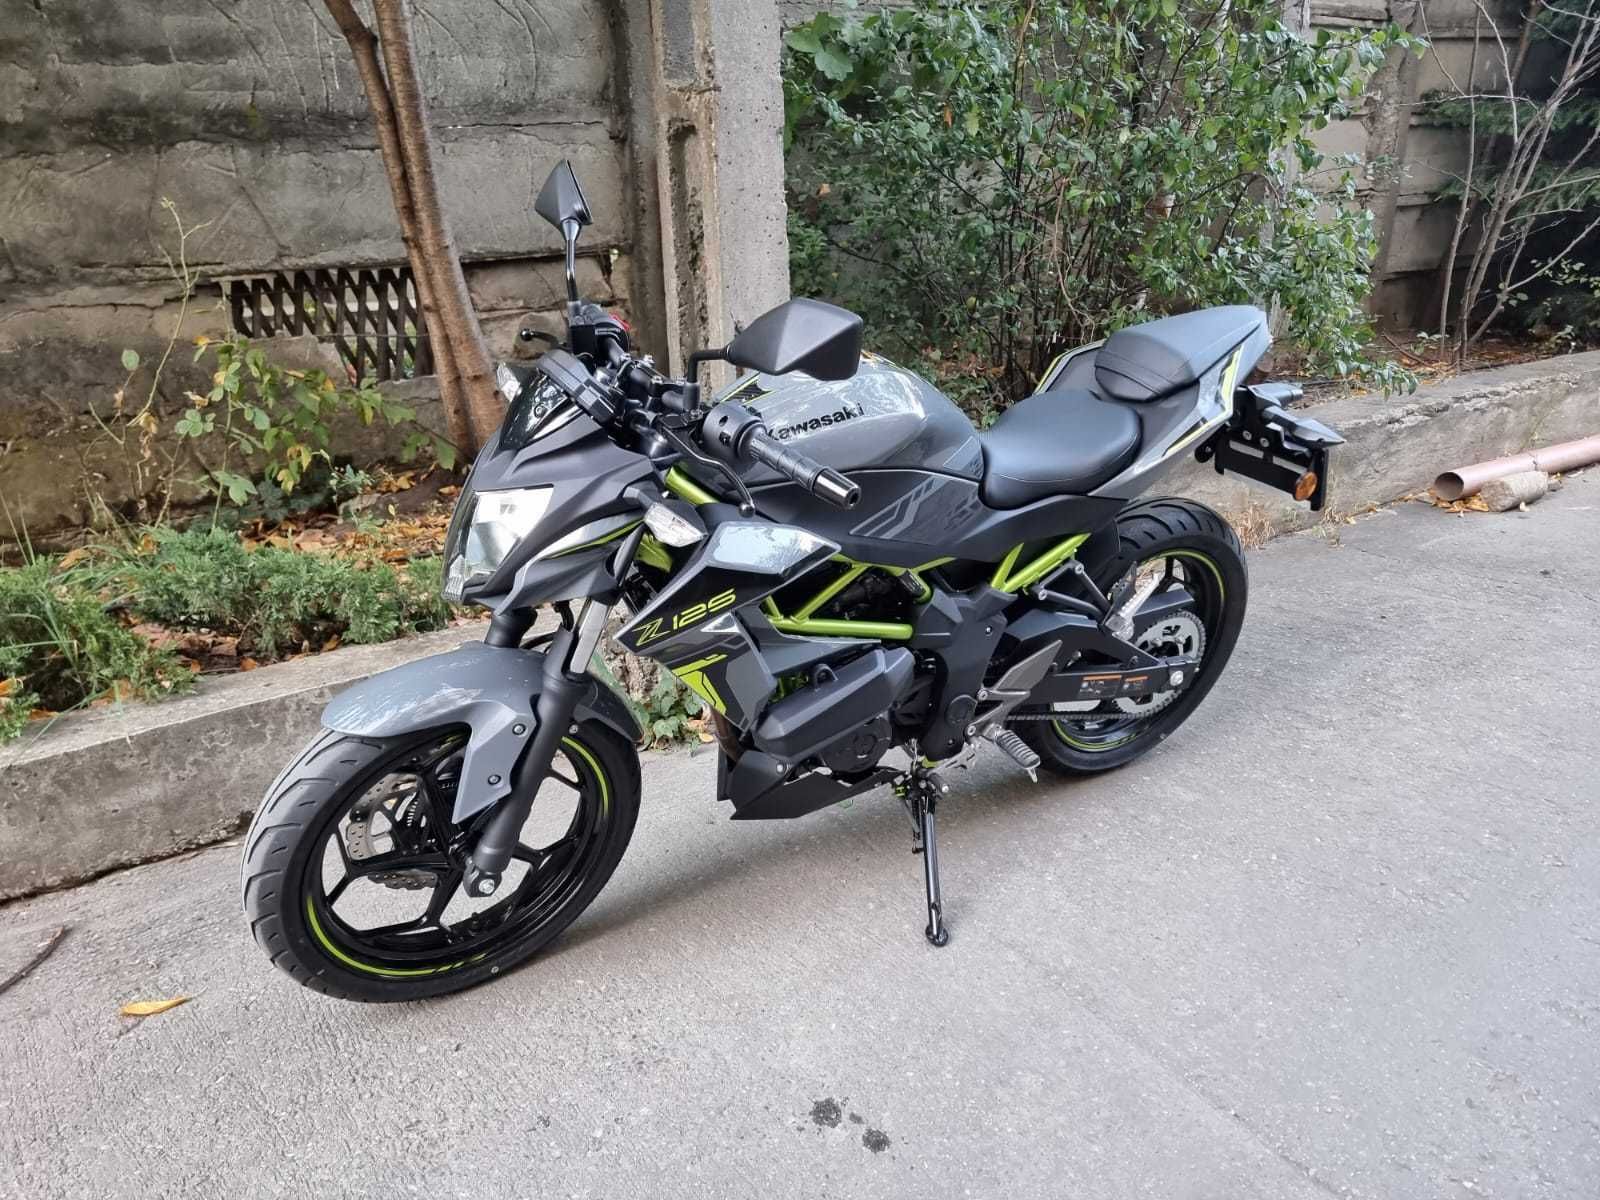 Motocicleta noua naked Kawasaki Z125 2023 gri in stoc